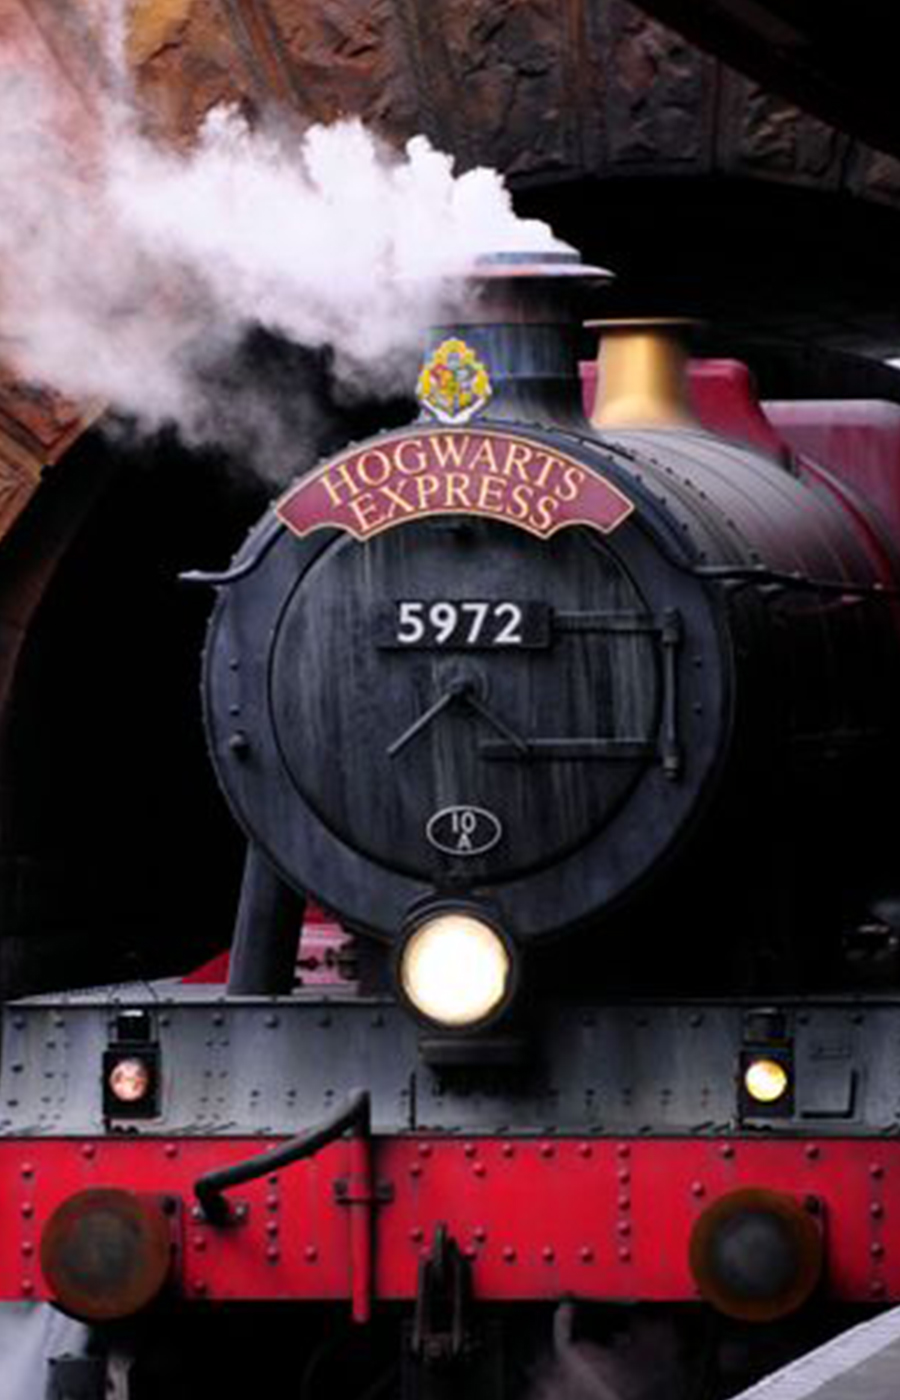 The Hogwarts Express - DNEG